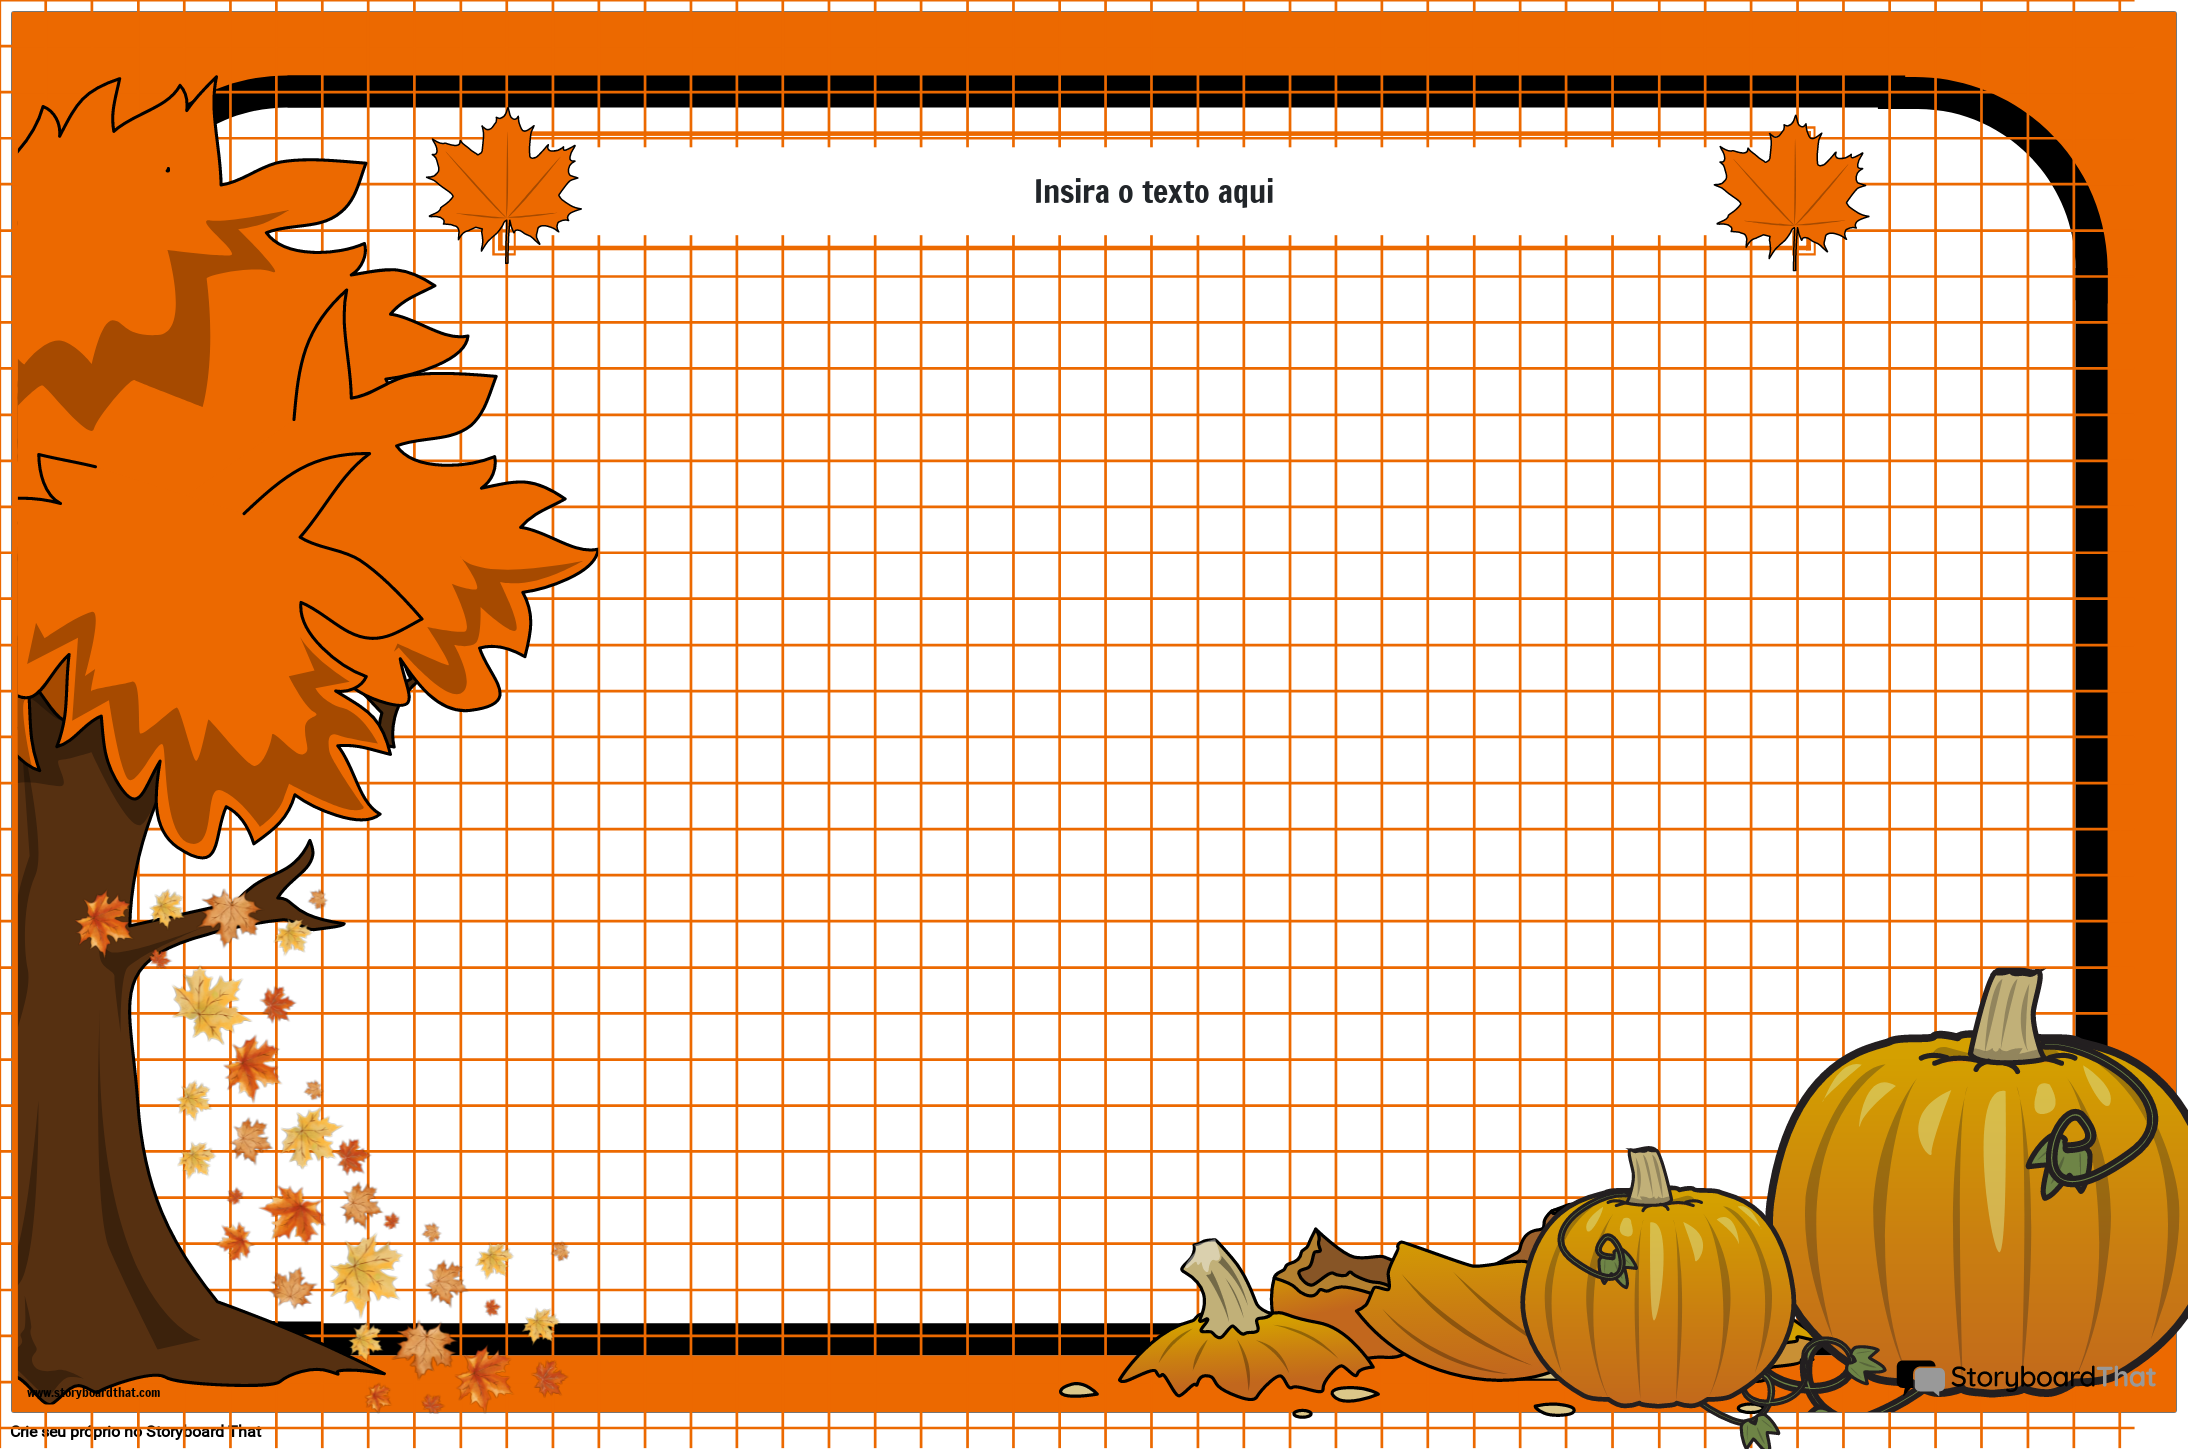 Pôster de papel milimetrado com tema de outono